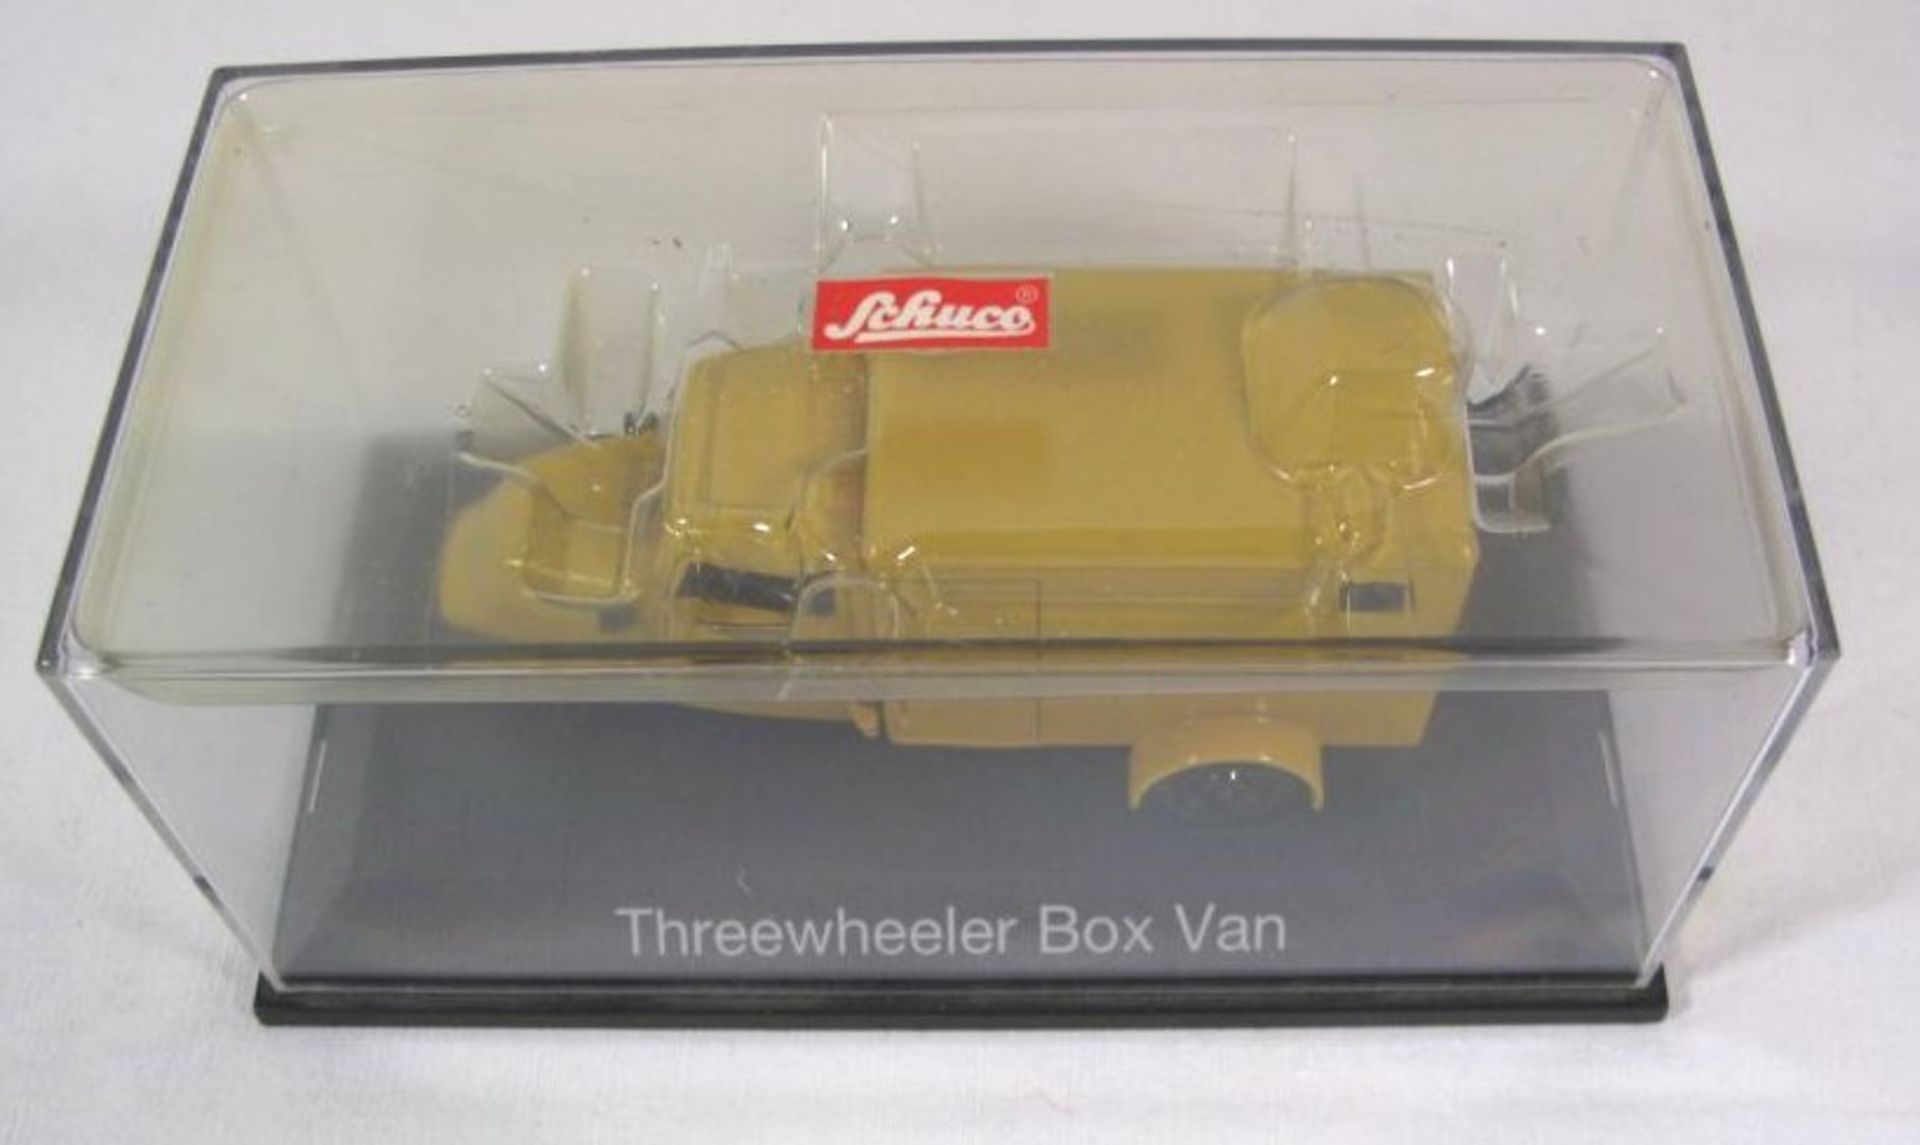 Schuco-Modell in Display "Threewheeler Box Van ", kl. Teil lose in Display. - Bild 2 aus 4